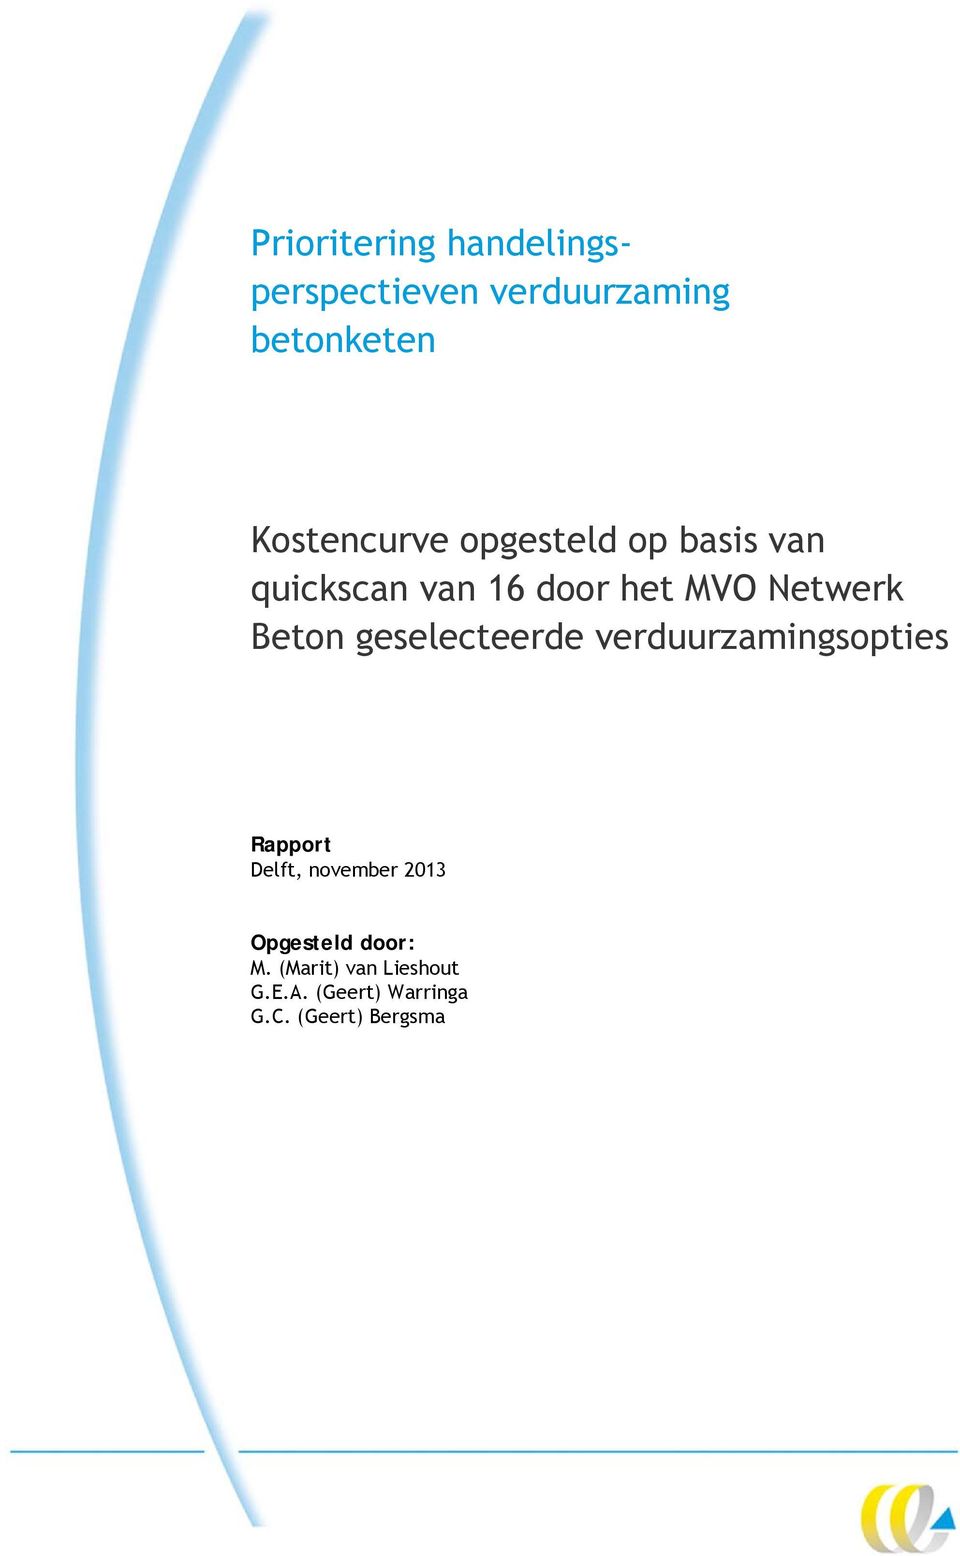 Beton geselecteerde verduurzamingsopties Rapport Delft, november 2013